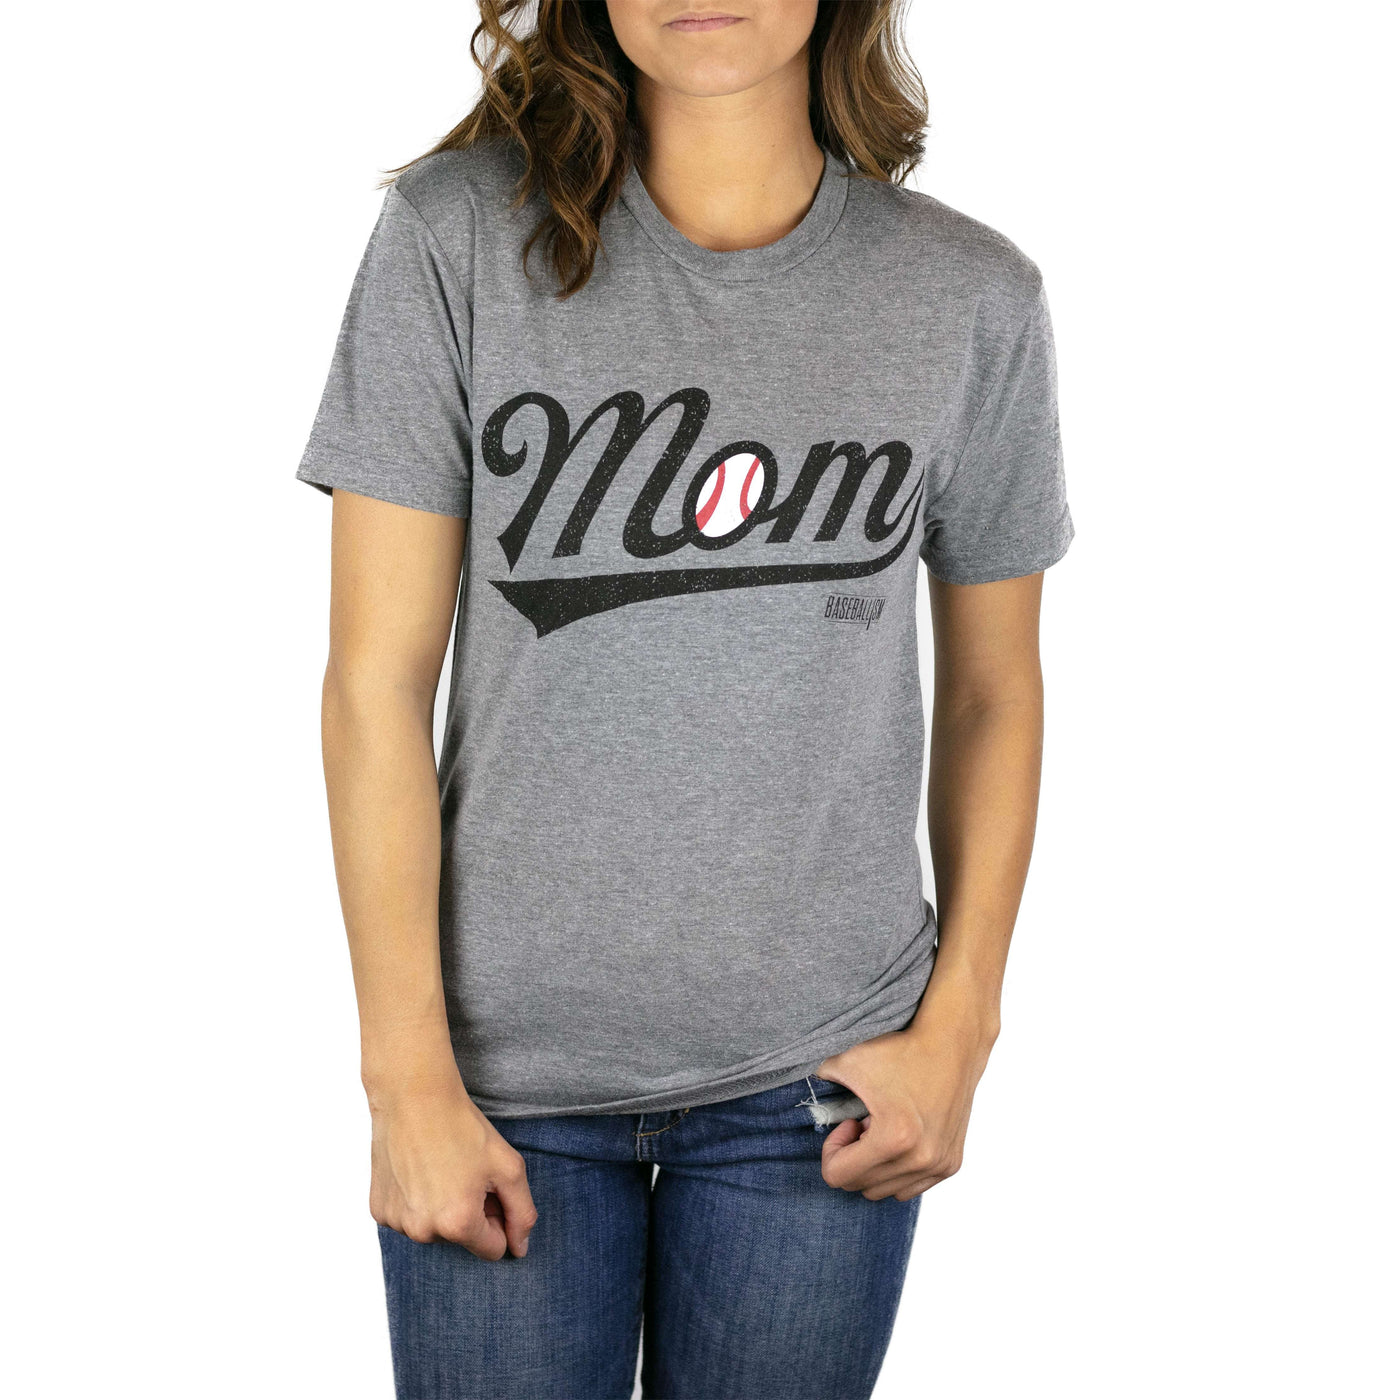 ベースボールママ - ウォームアップ T シャツ